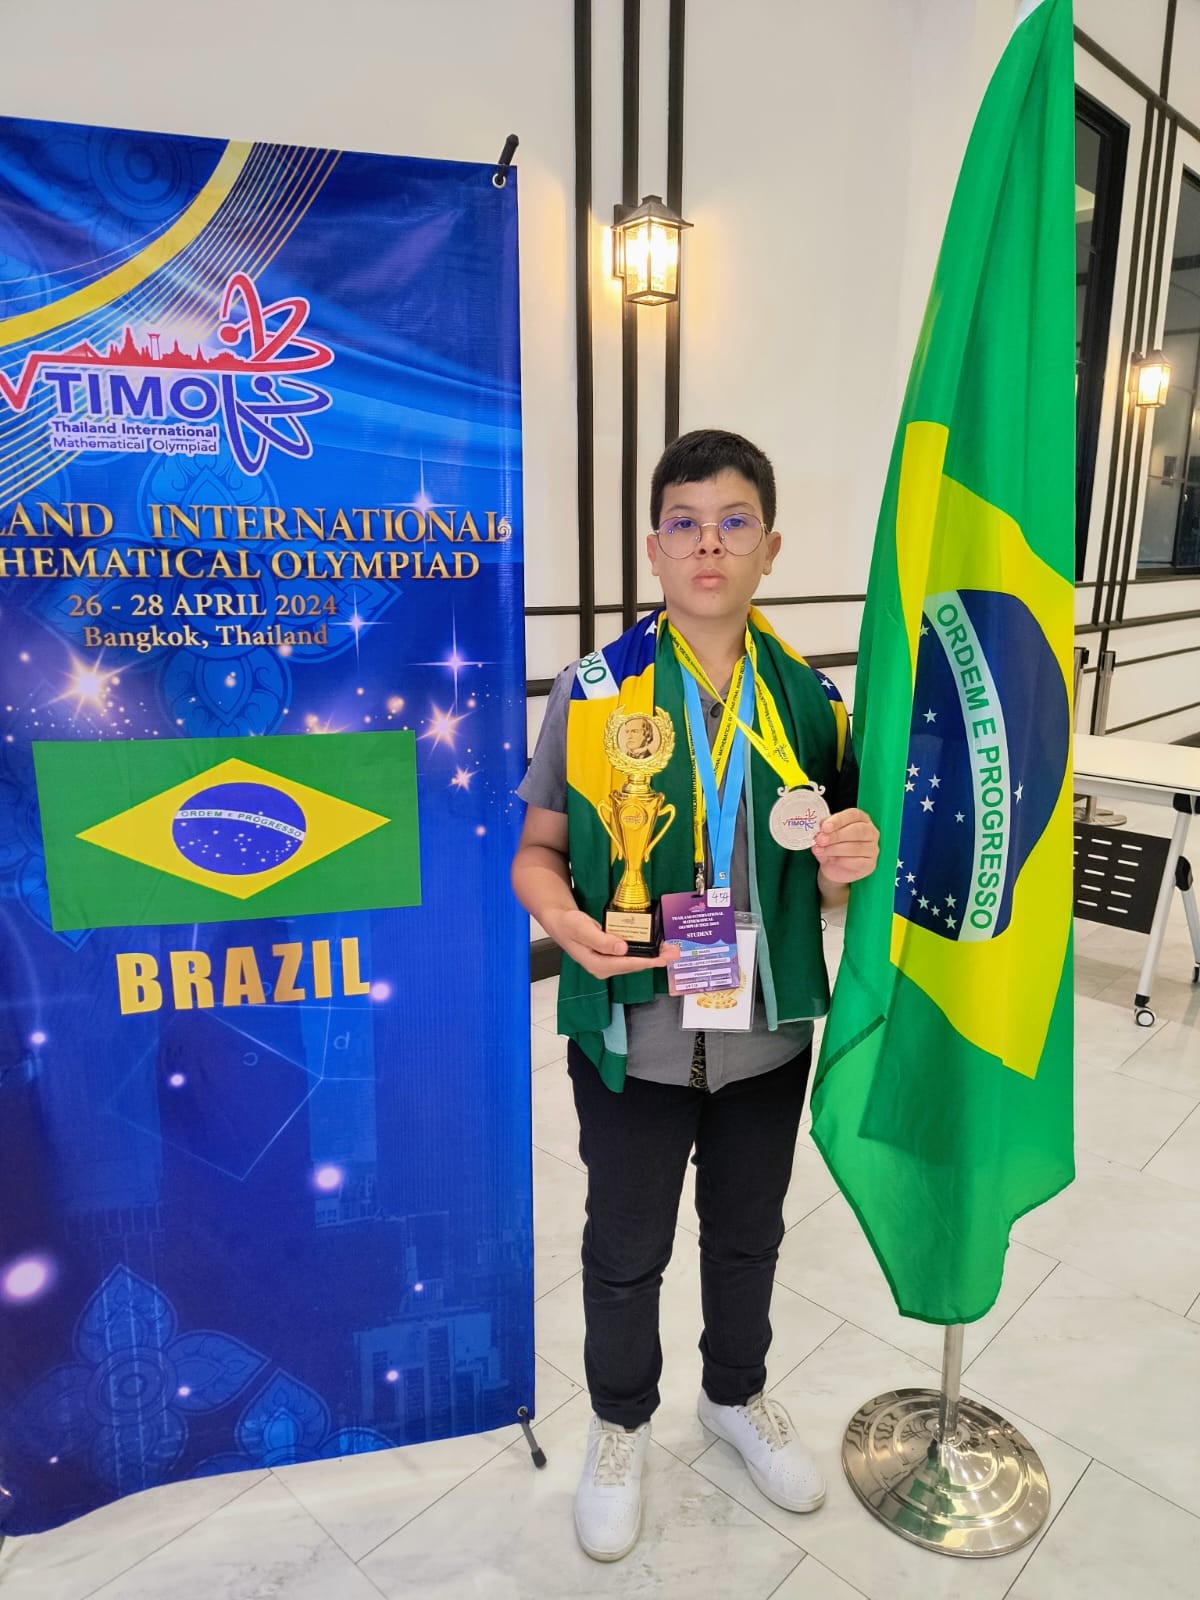 Mineiro de 13 anos gabarita prova de raciocínio lógico na Olimpíada Global de Matemática na Tailândia: 'Me dediquei muito'